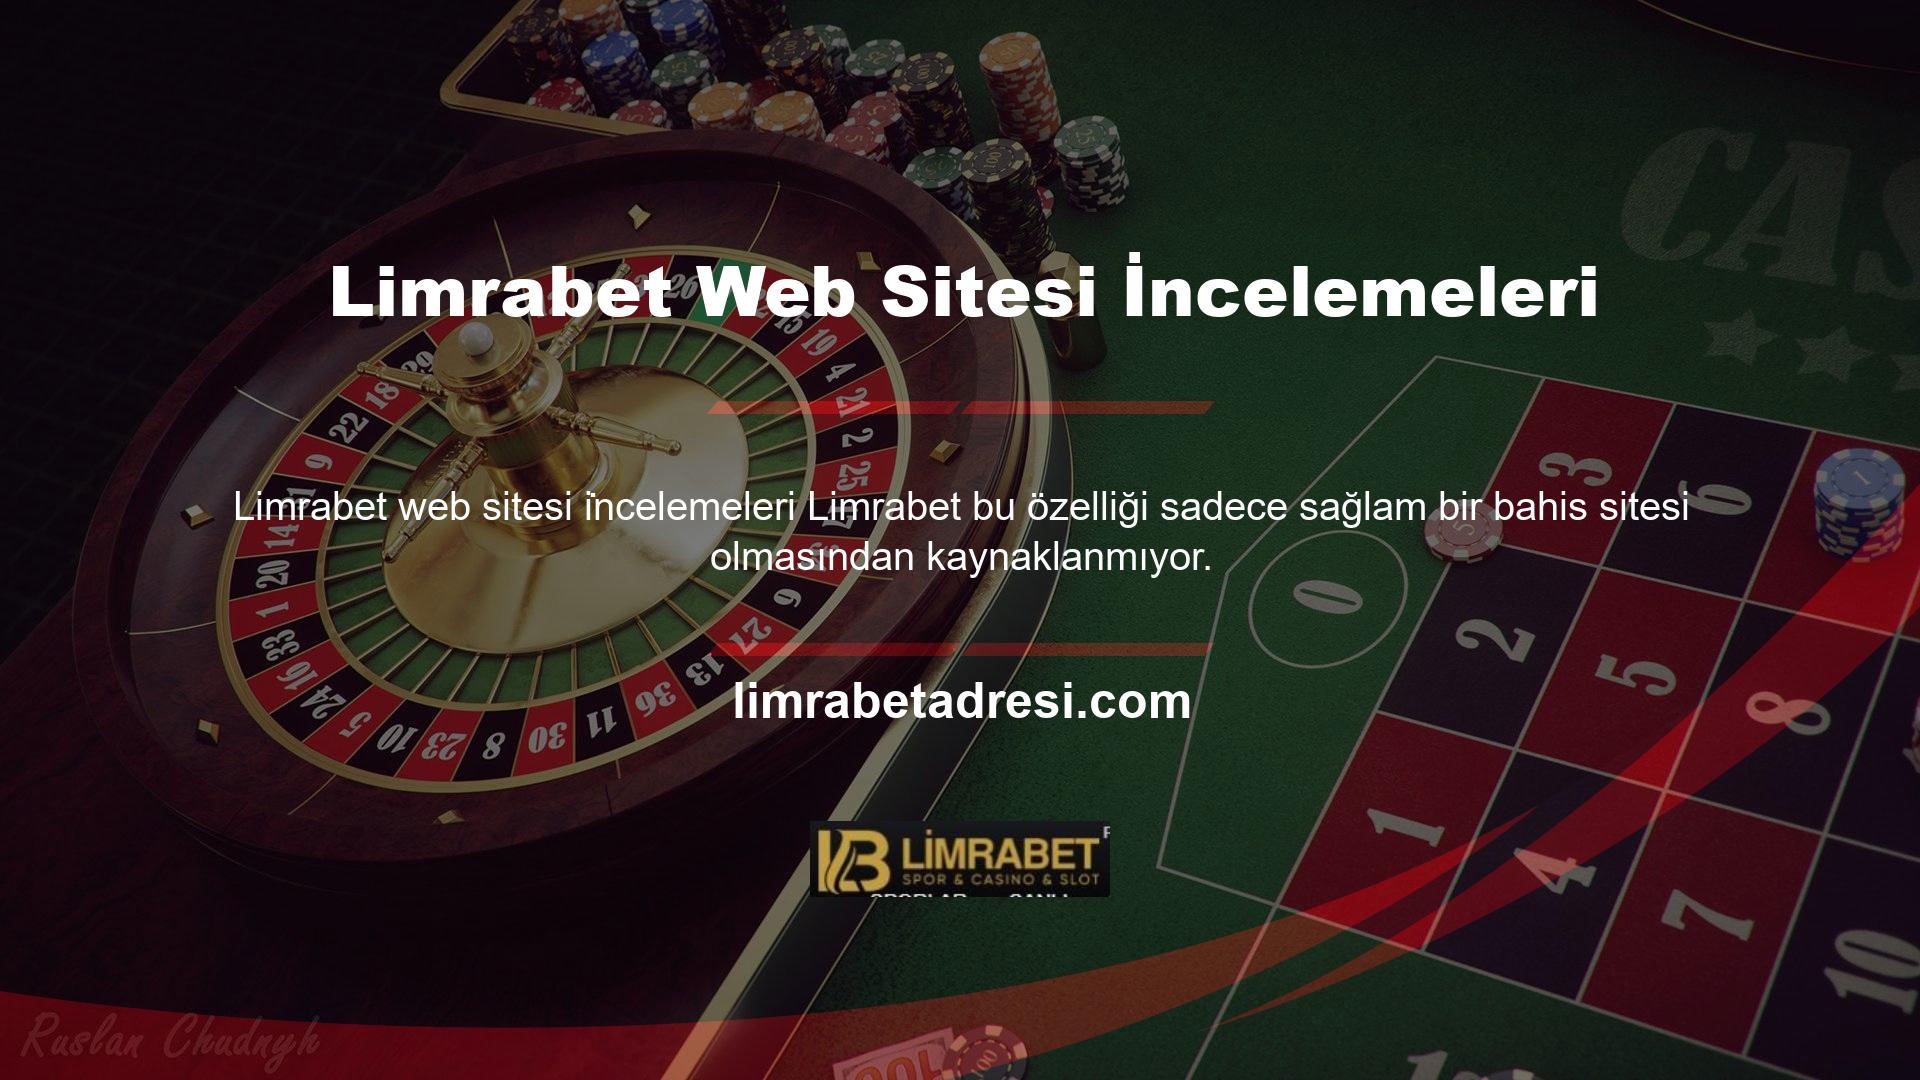 Limrabet, web sitesinde birçok ayrıntılı casino oyunu ve kapsamlı yüksek bahis tavsiyeleri sunmaktadır